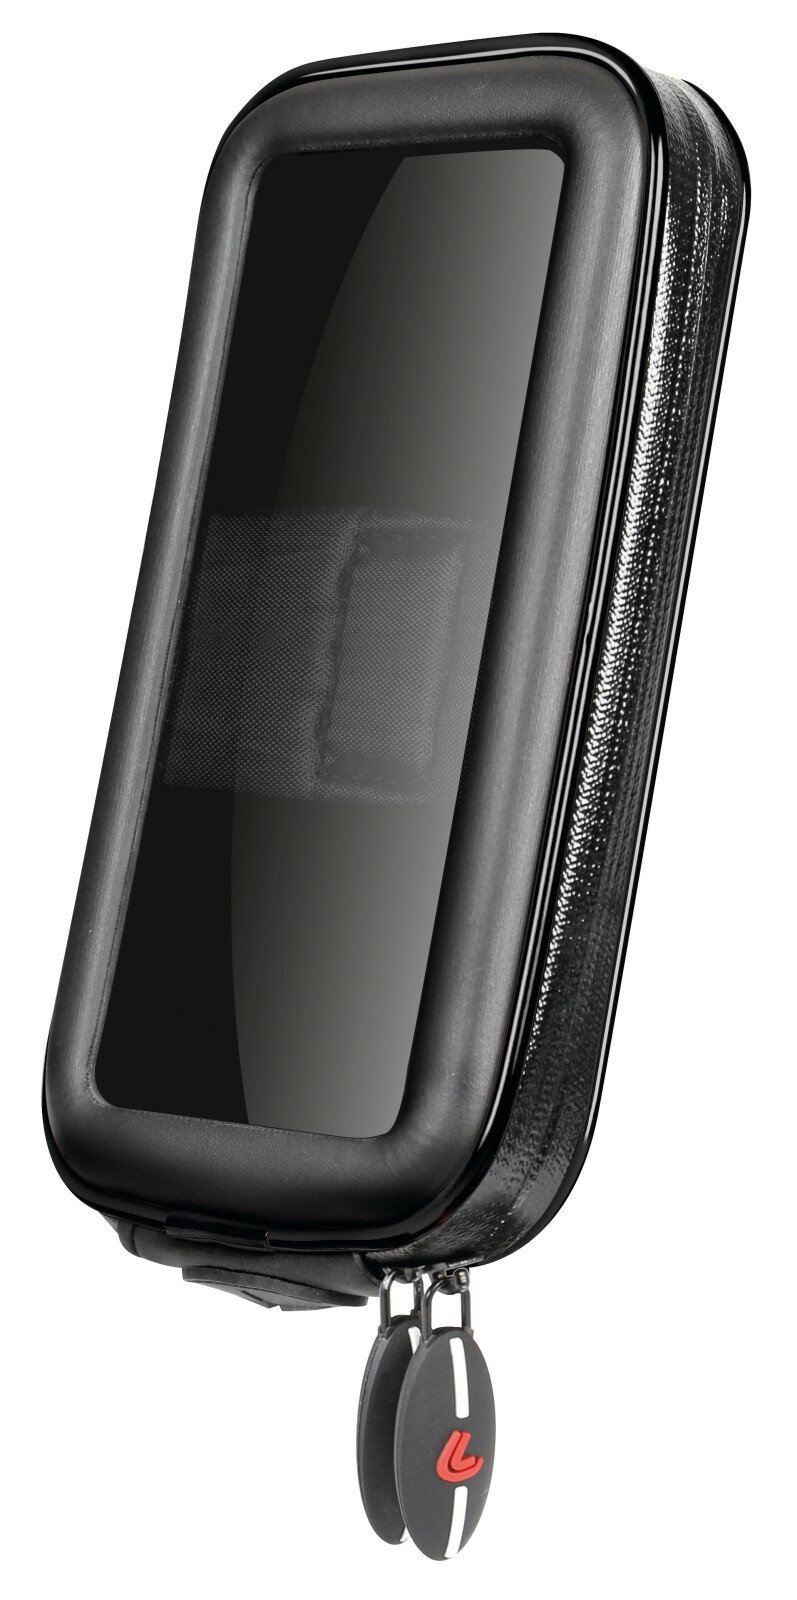 Opti Sized univerzális tok az Opti Line mobiltelefon tartókhoz - L - 90x175mm thumb